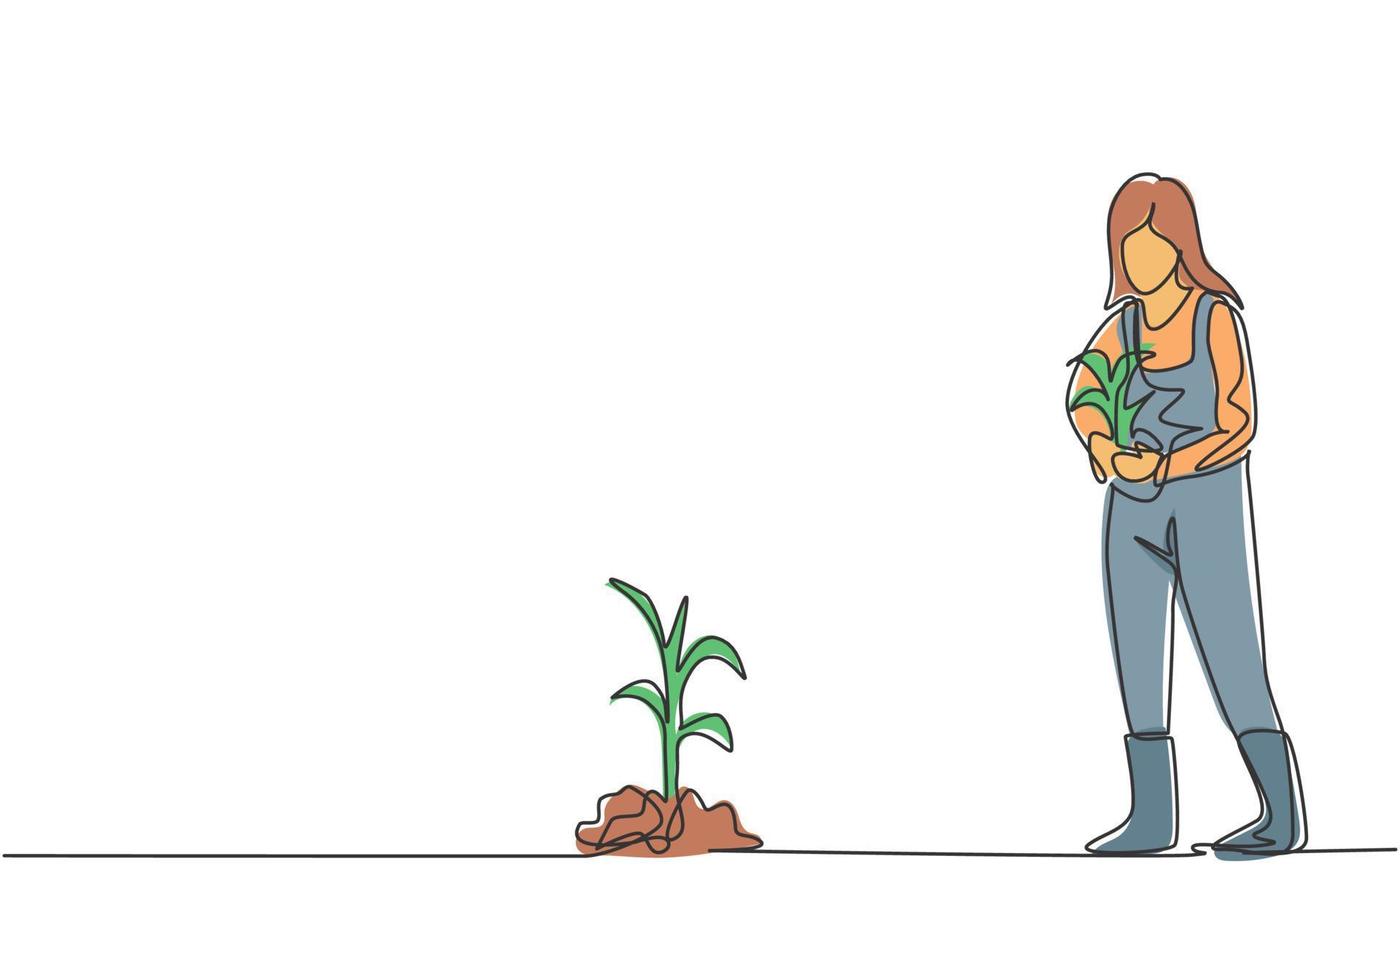 dibujo de línea continua única joven agricultora traer cultivos para plantar en campos agrícolas. concepto de minimalismo de actividades agrícolas exitosas. Ilustración de vector de diseño gráfico de dibujo dinámico de una línea.